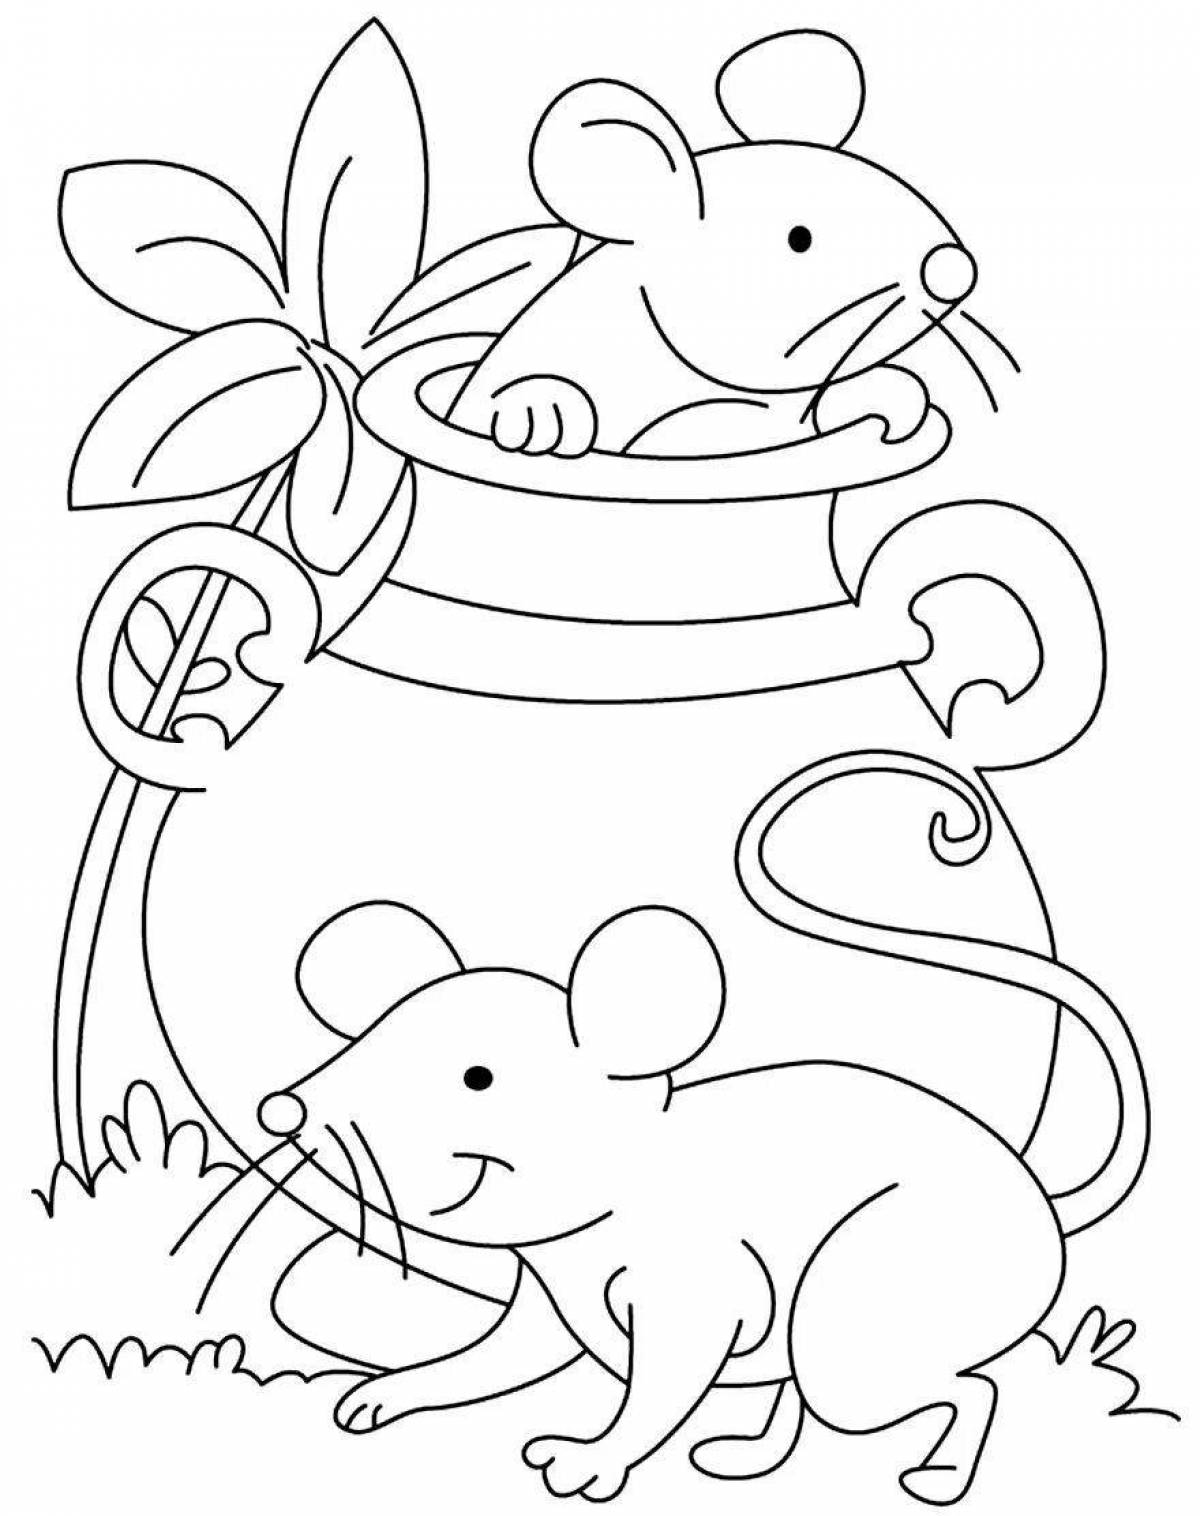 Мышка раскраска для детей